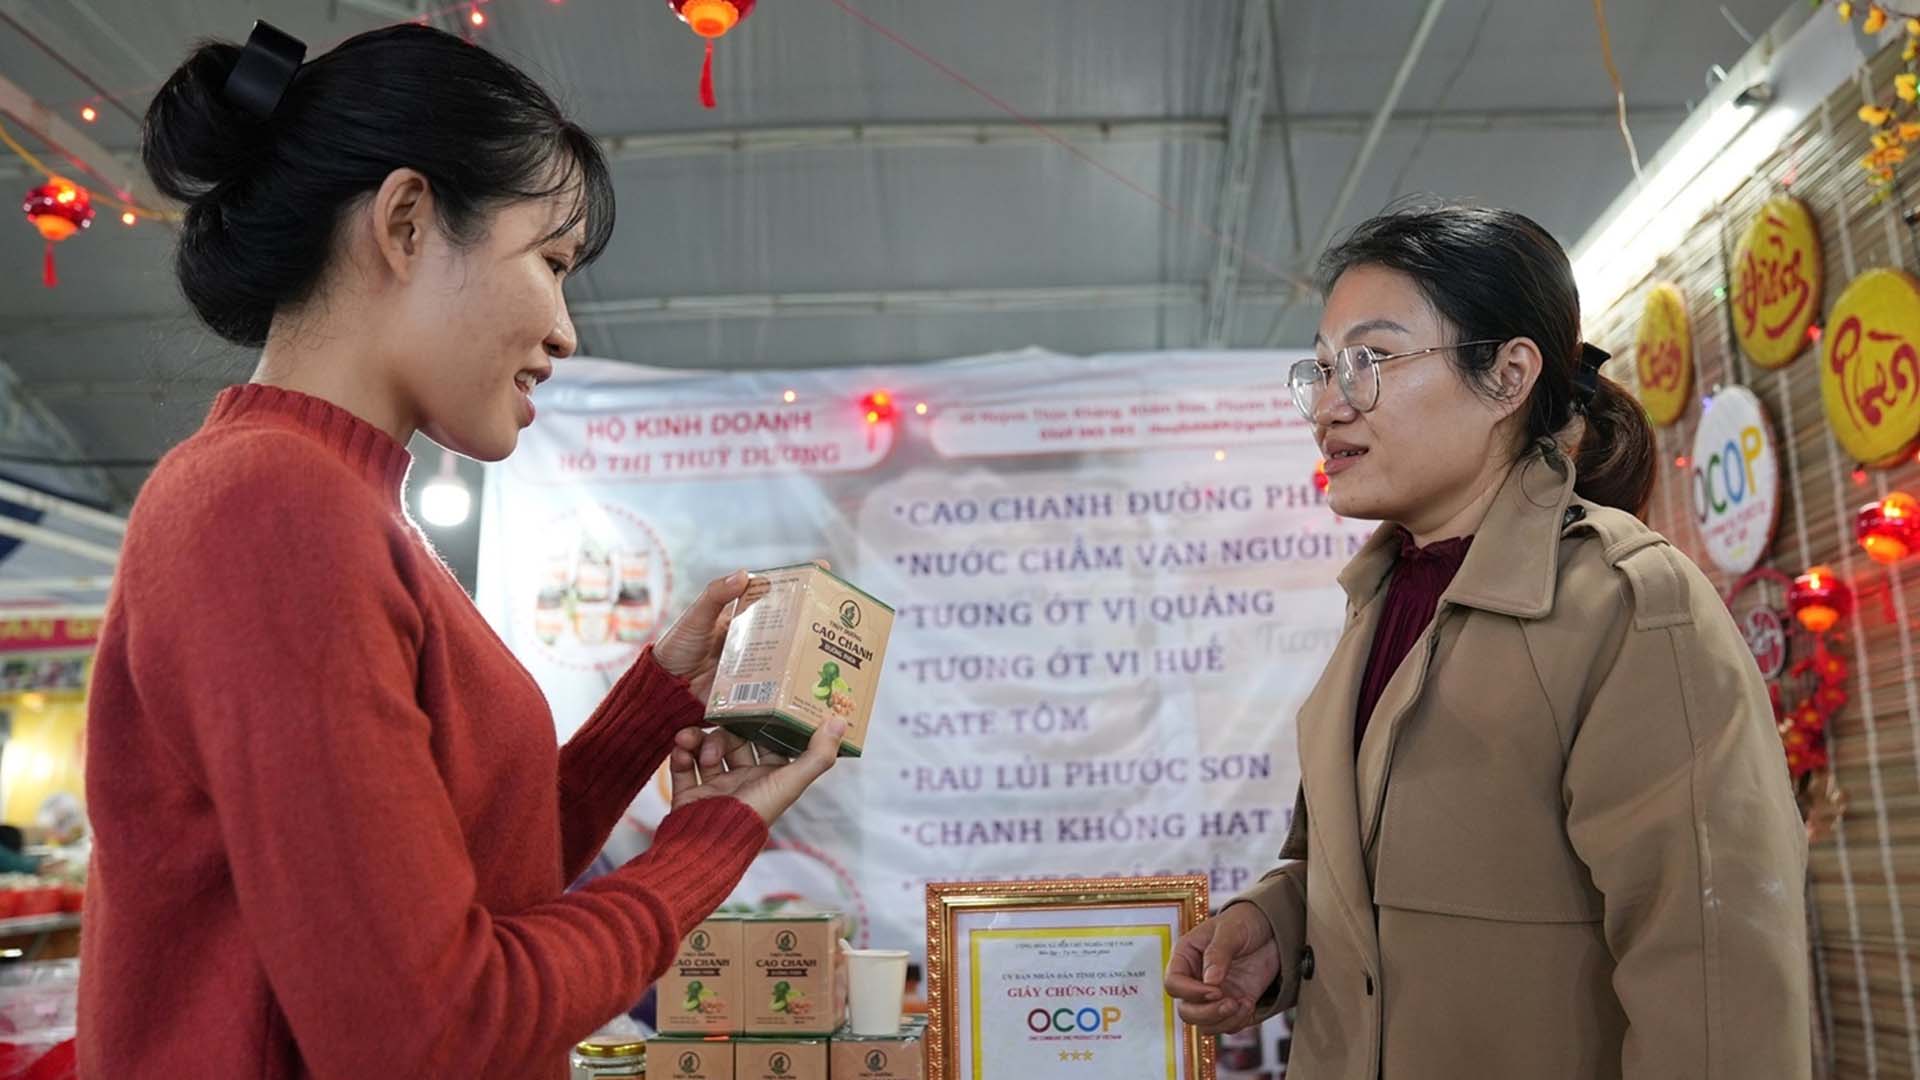 Quảng Nam: Cô gái Gié Triêng khởi nghiệp với cao chanh đường phèn